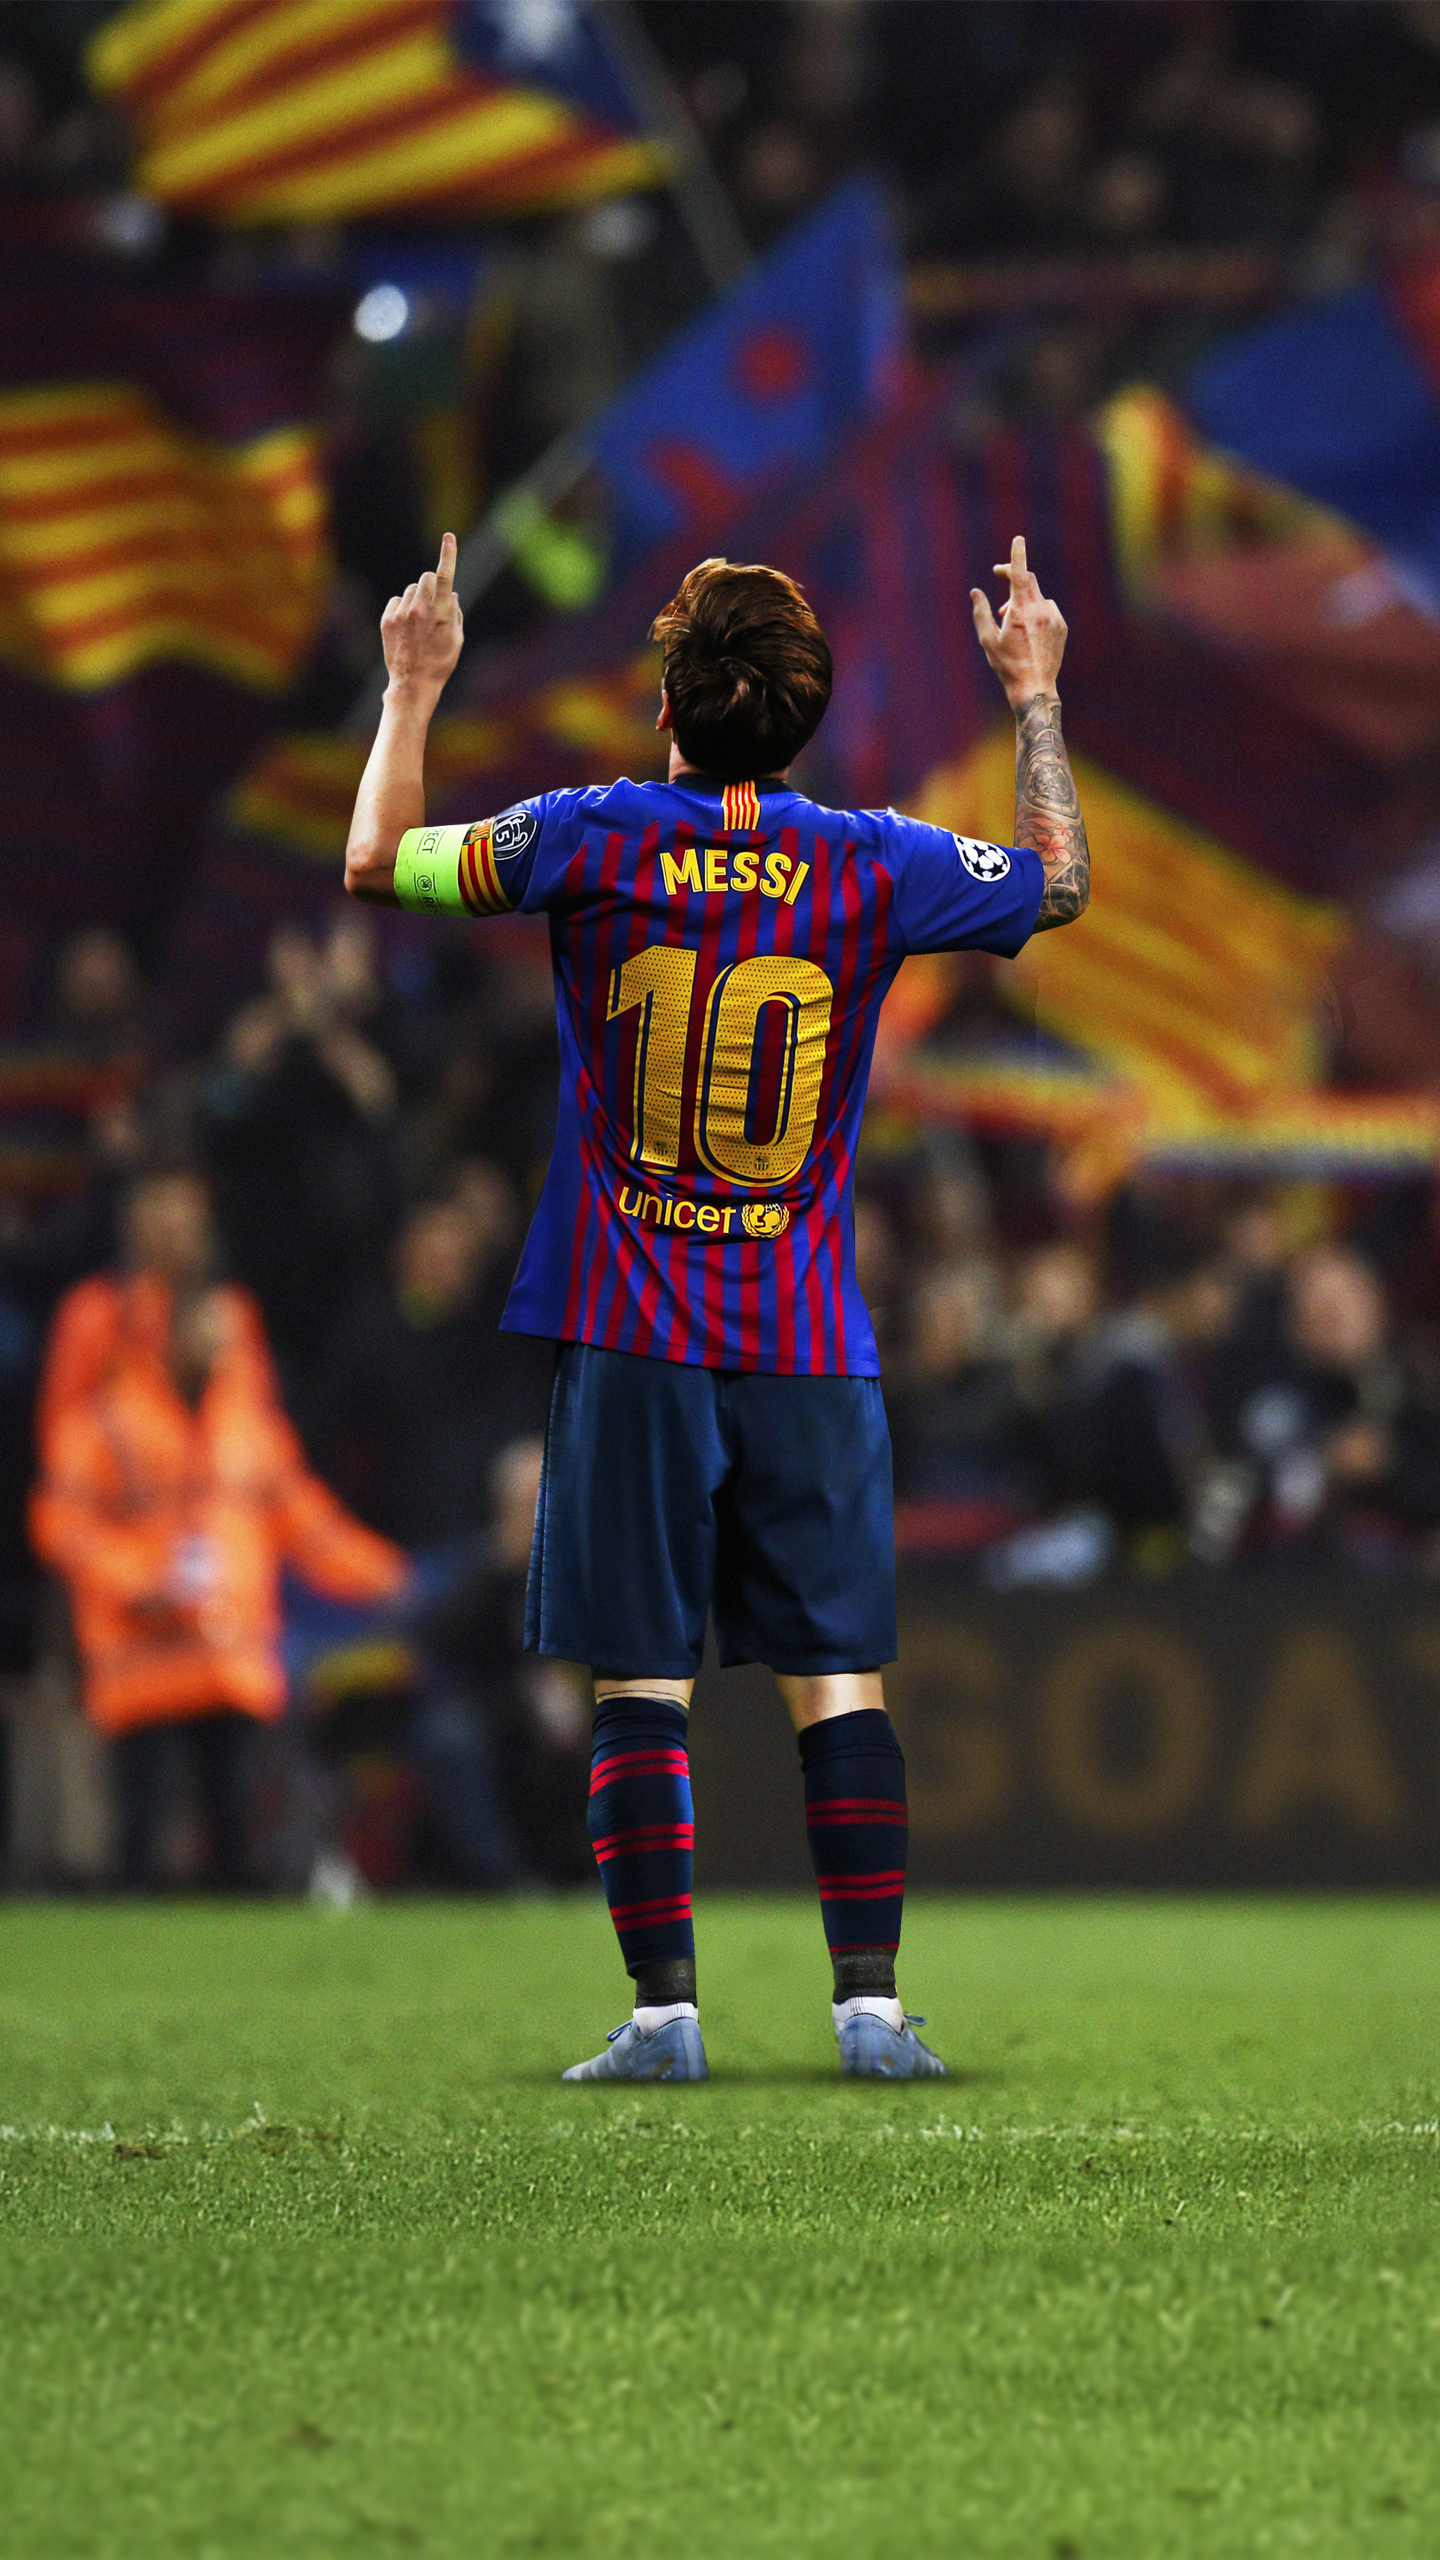 Hình nền điện thoại di động Lionel Messi Abyss: Chúng ta không thể nghi ngờ rằng Lionel Messi là một trong những cầu thủ hay nhất thế giới. Với hình nền di động Lionel Messi Abyss, bạn có thể thấy những kỹ năng tuyệt vời của anh ấy và hướng đến những mục tiêu cao hơn trong cuộc sống.